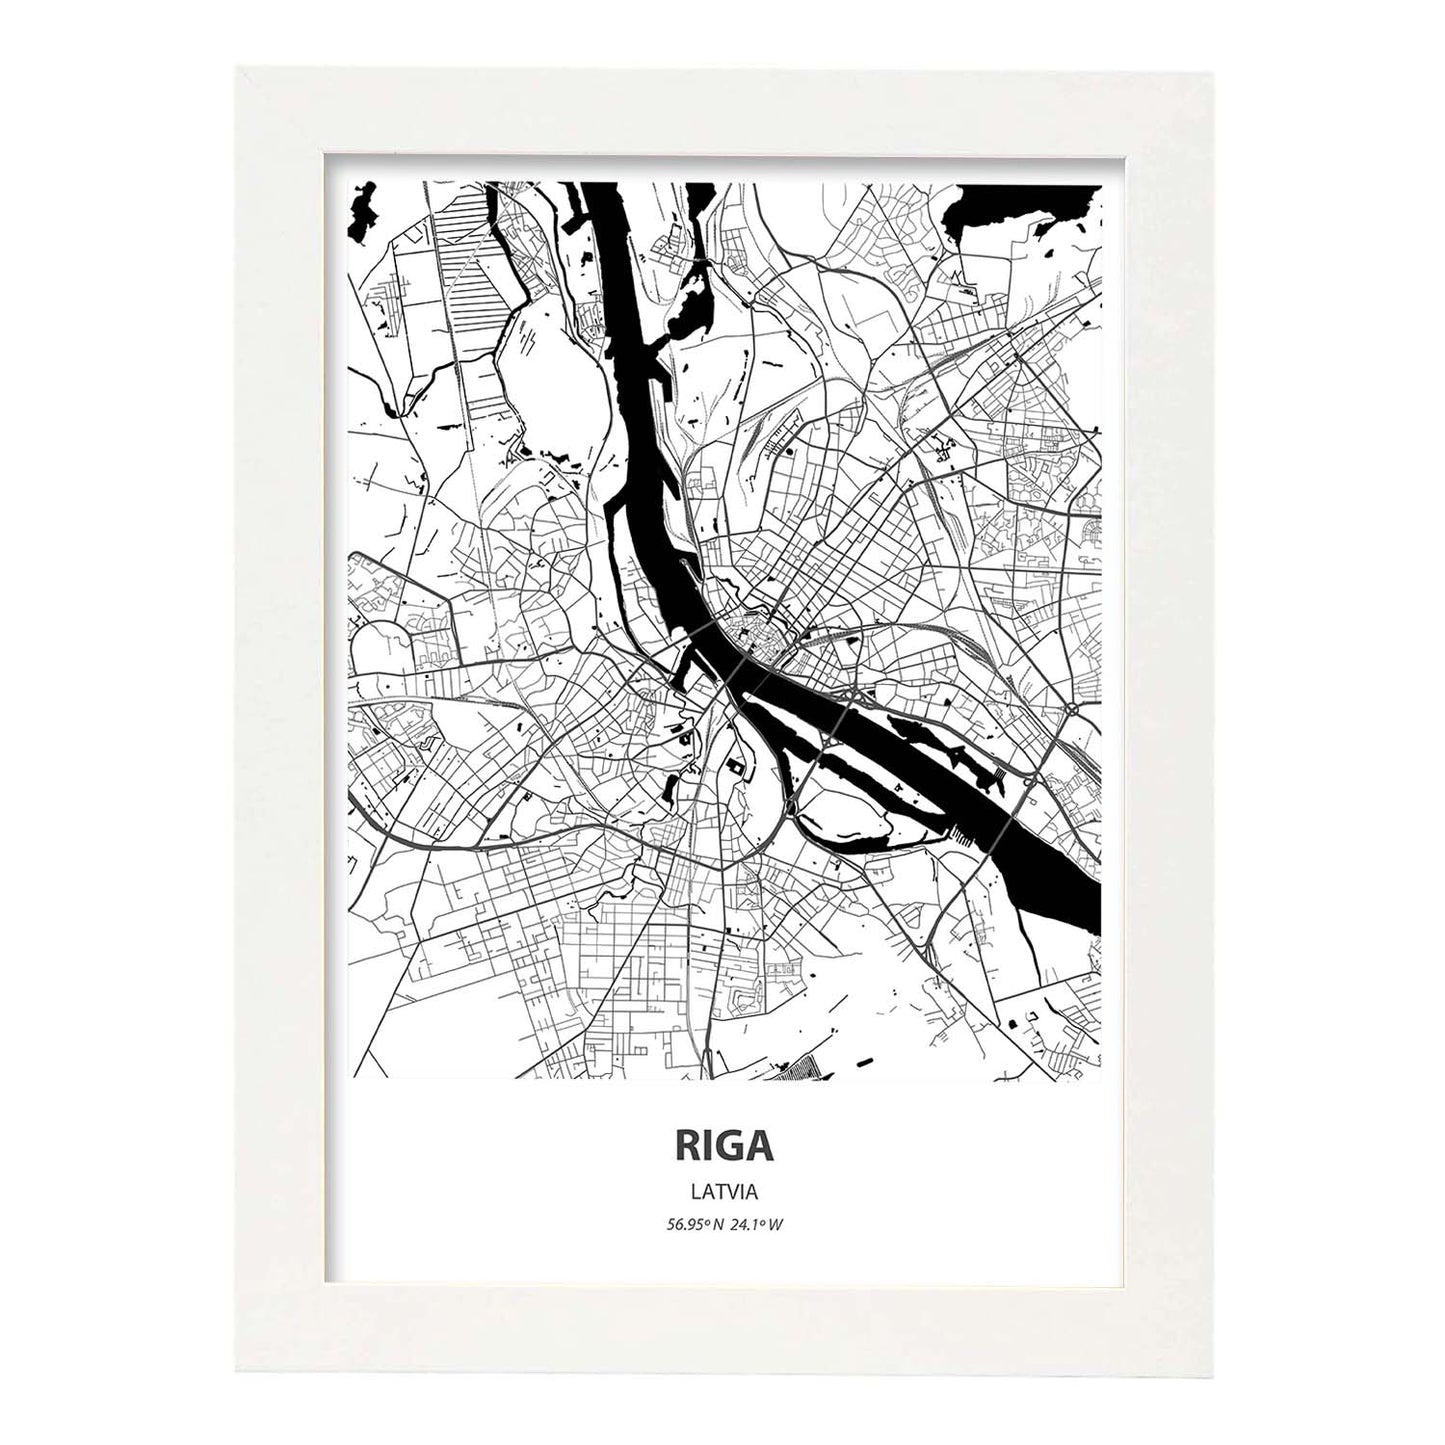 Poster con mapa de Riga - Latvia. Láminas de ciudades de Europa con mares y ríos en color negro.-Artwork-Nacnic-A4-Marco Blanco-Nacnic Estudio SL